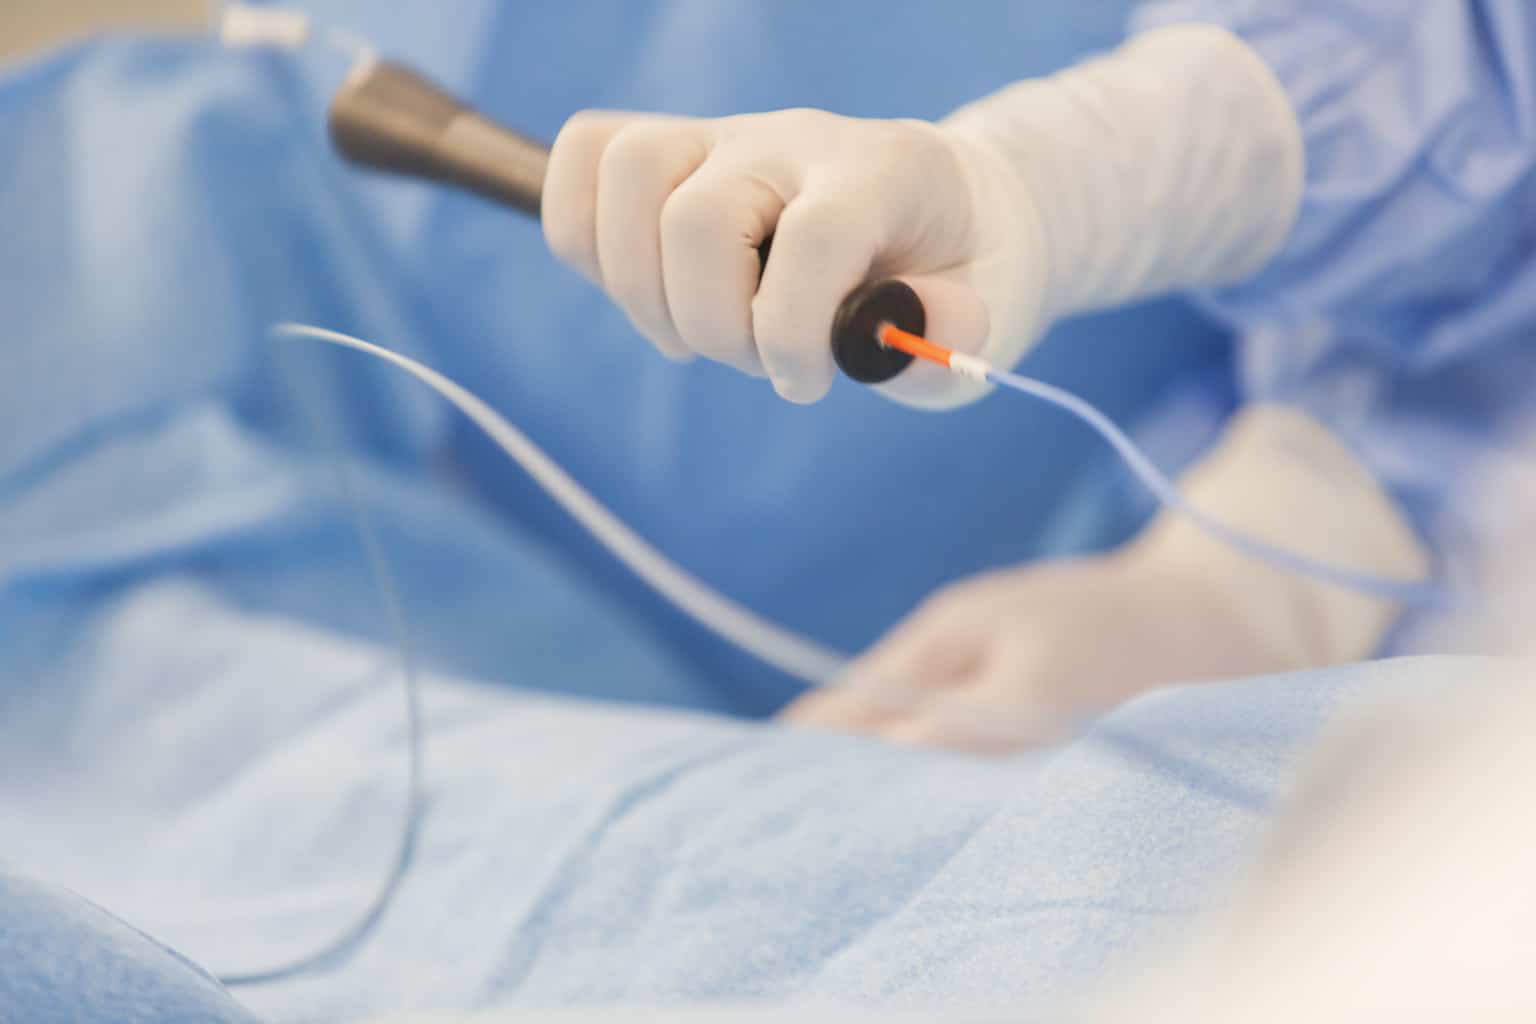 cardiology catheter closeup